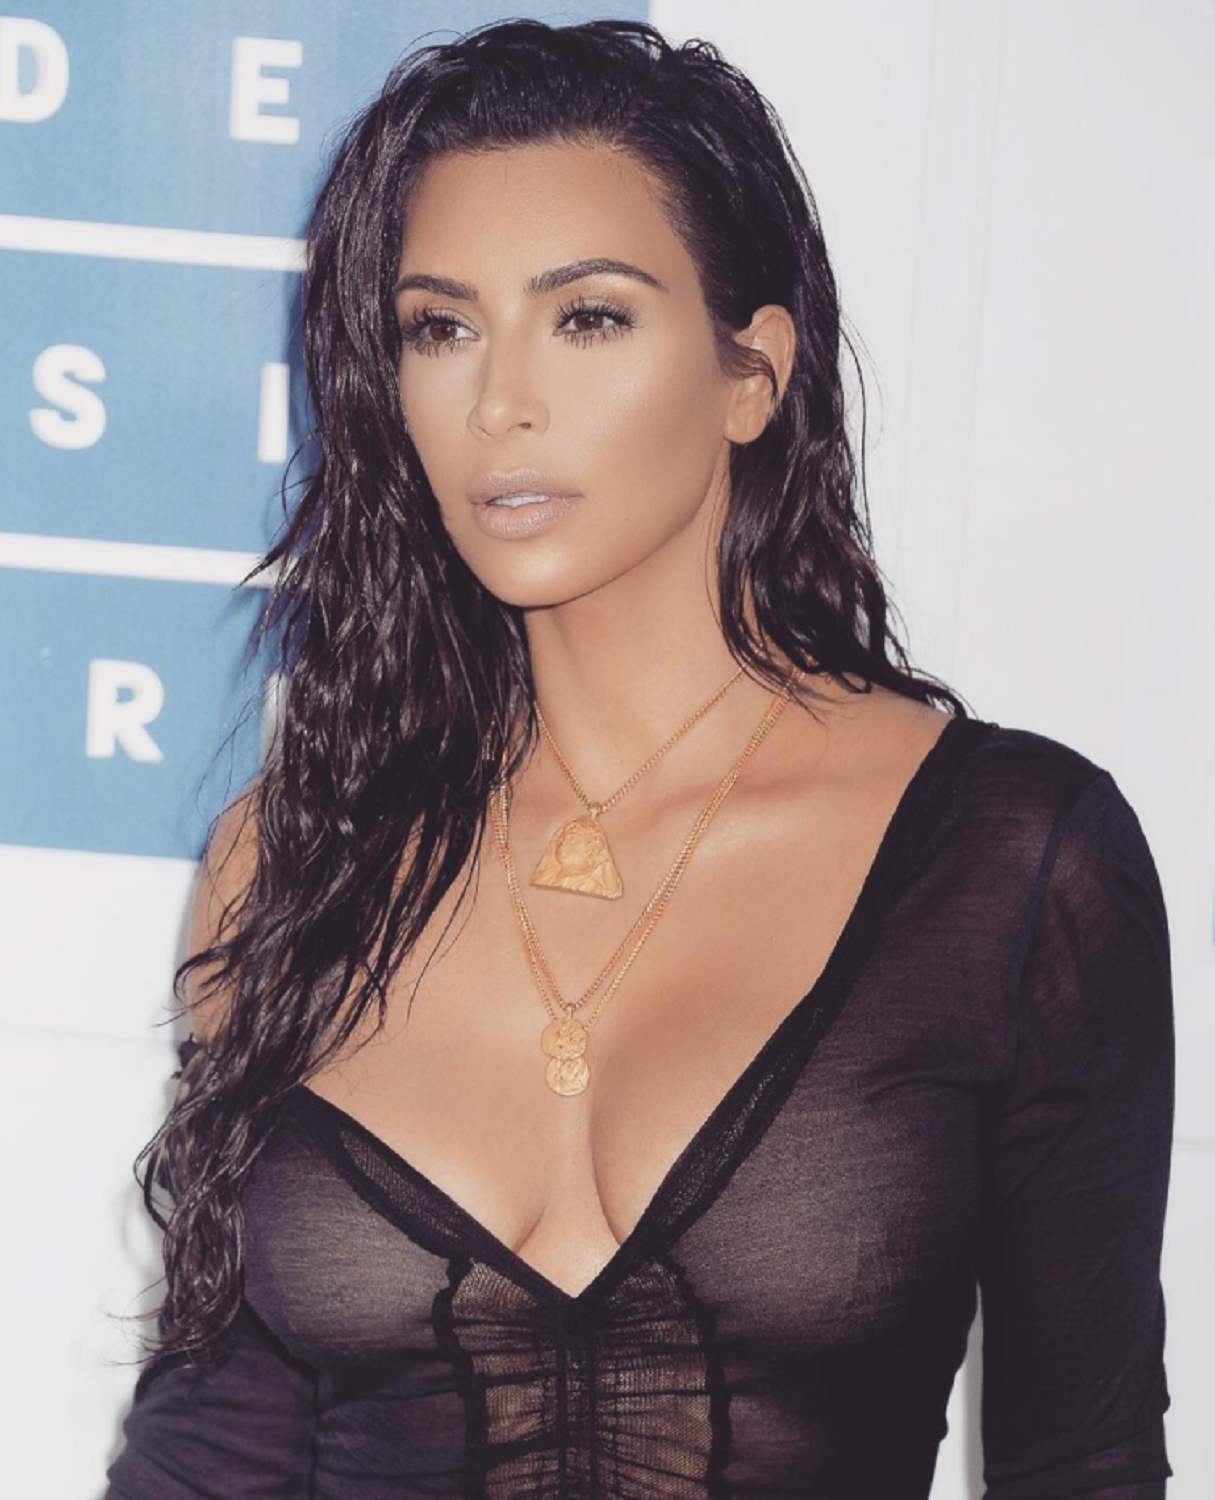 El polémico vídeo de Kim Kardashian con dos rayas de azúcar